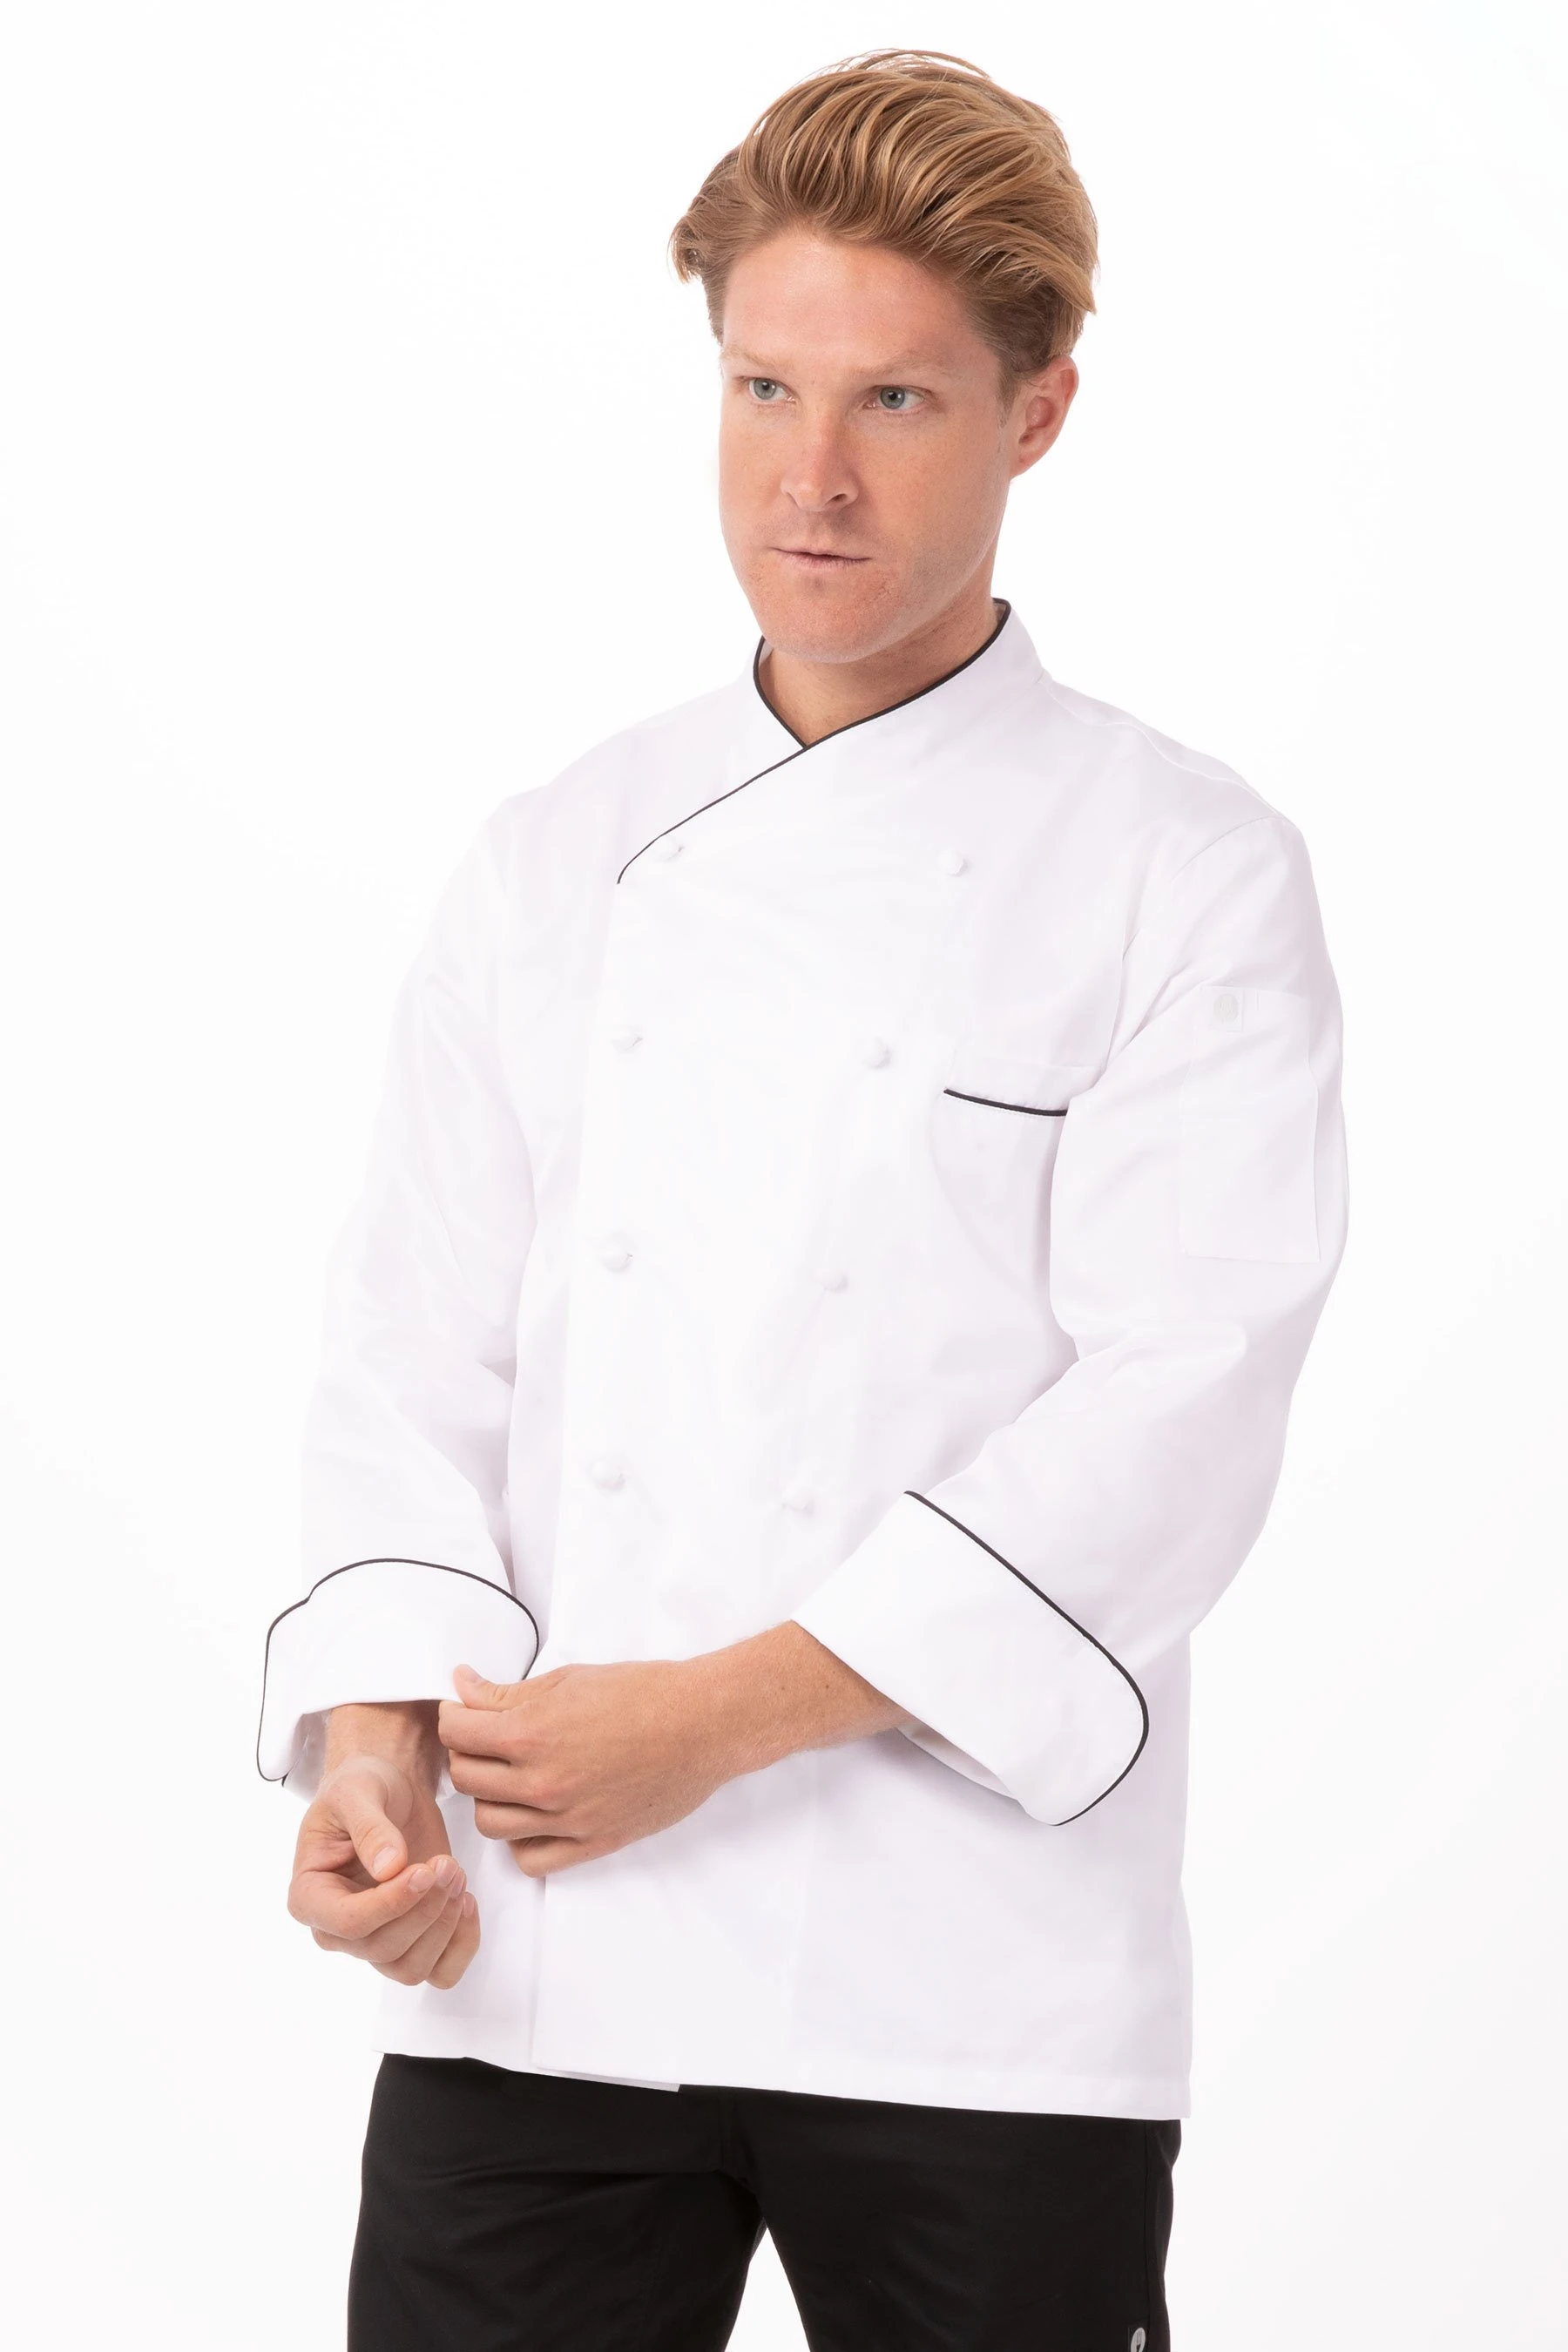 Monte Carlo Premium Chef Coat